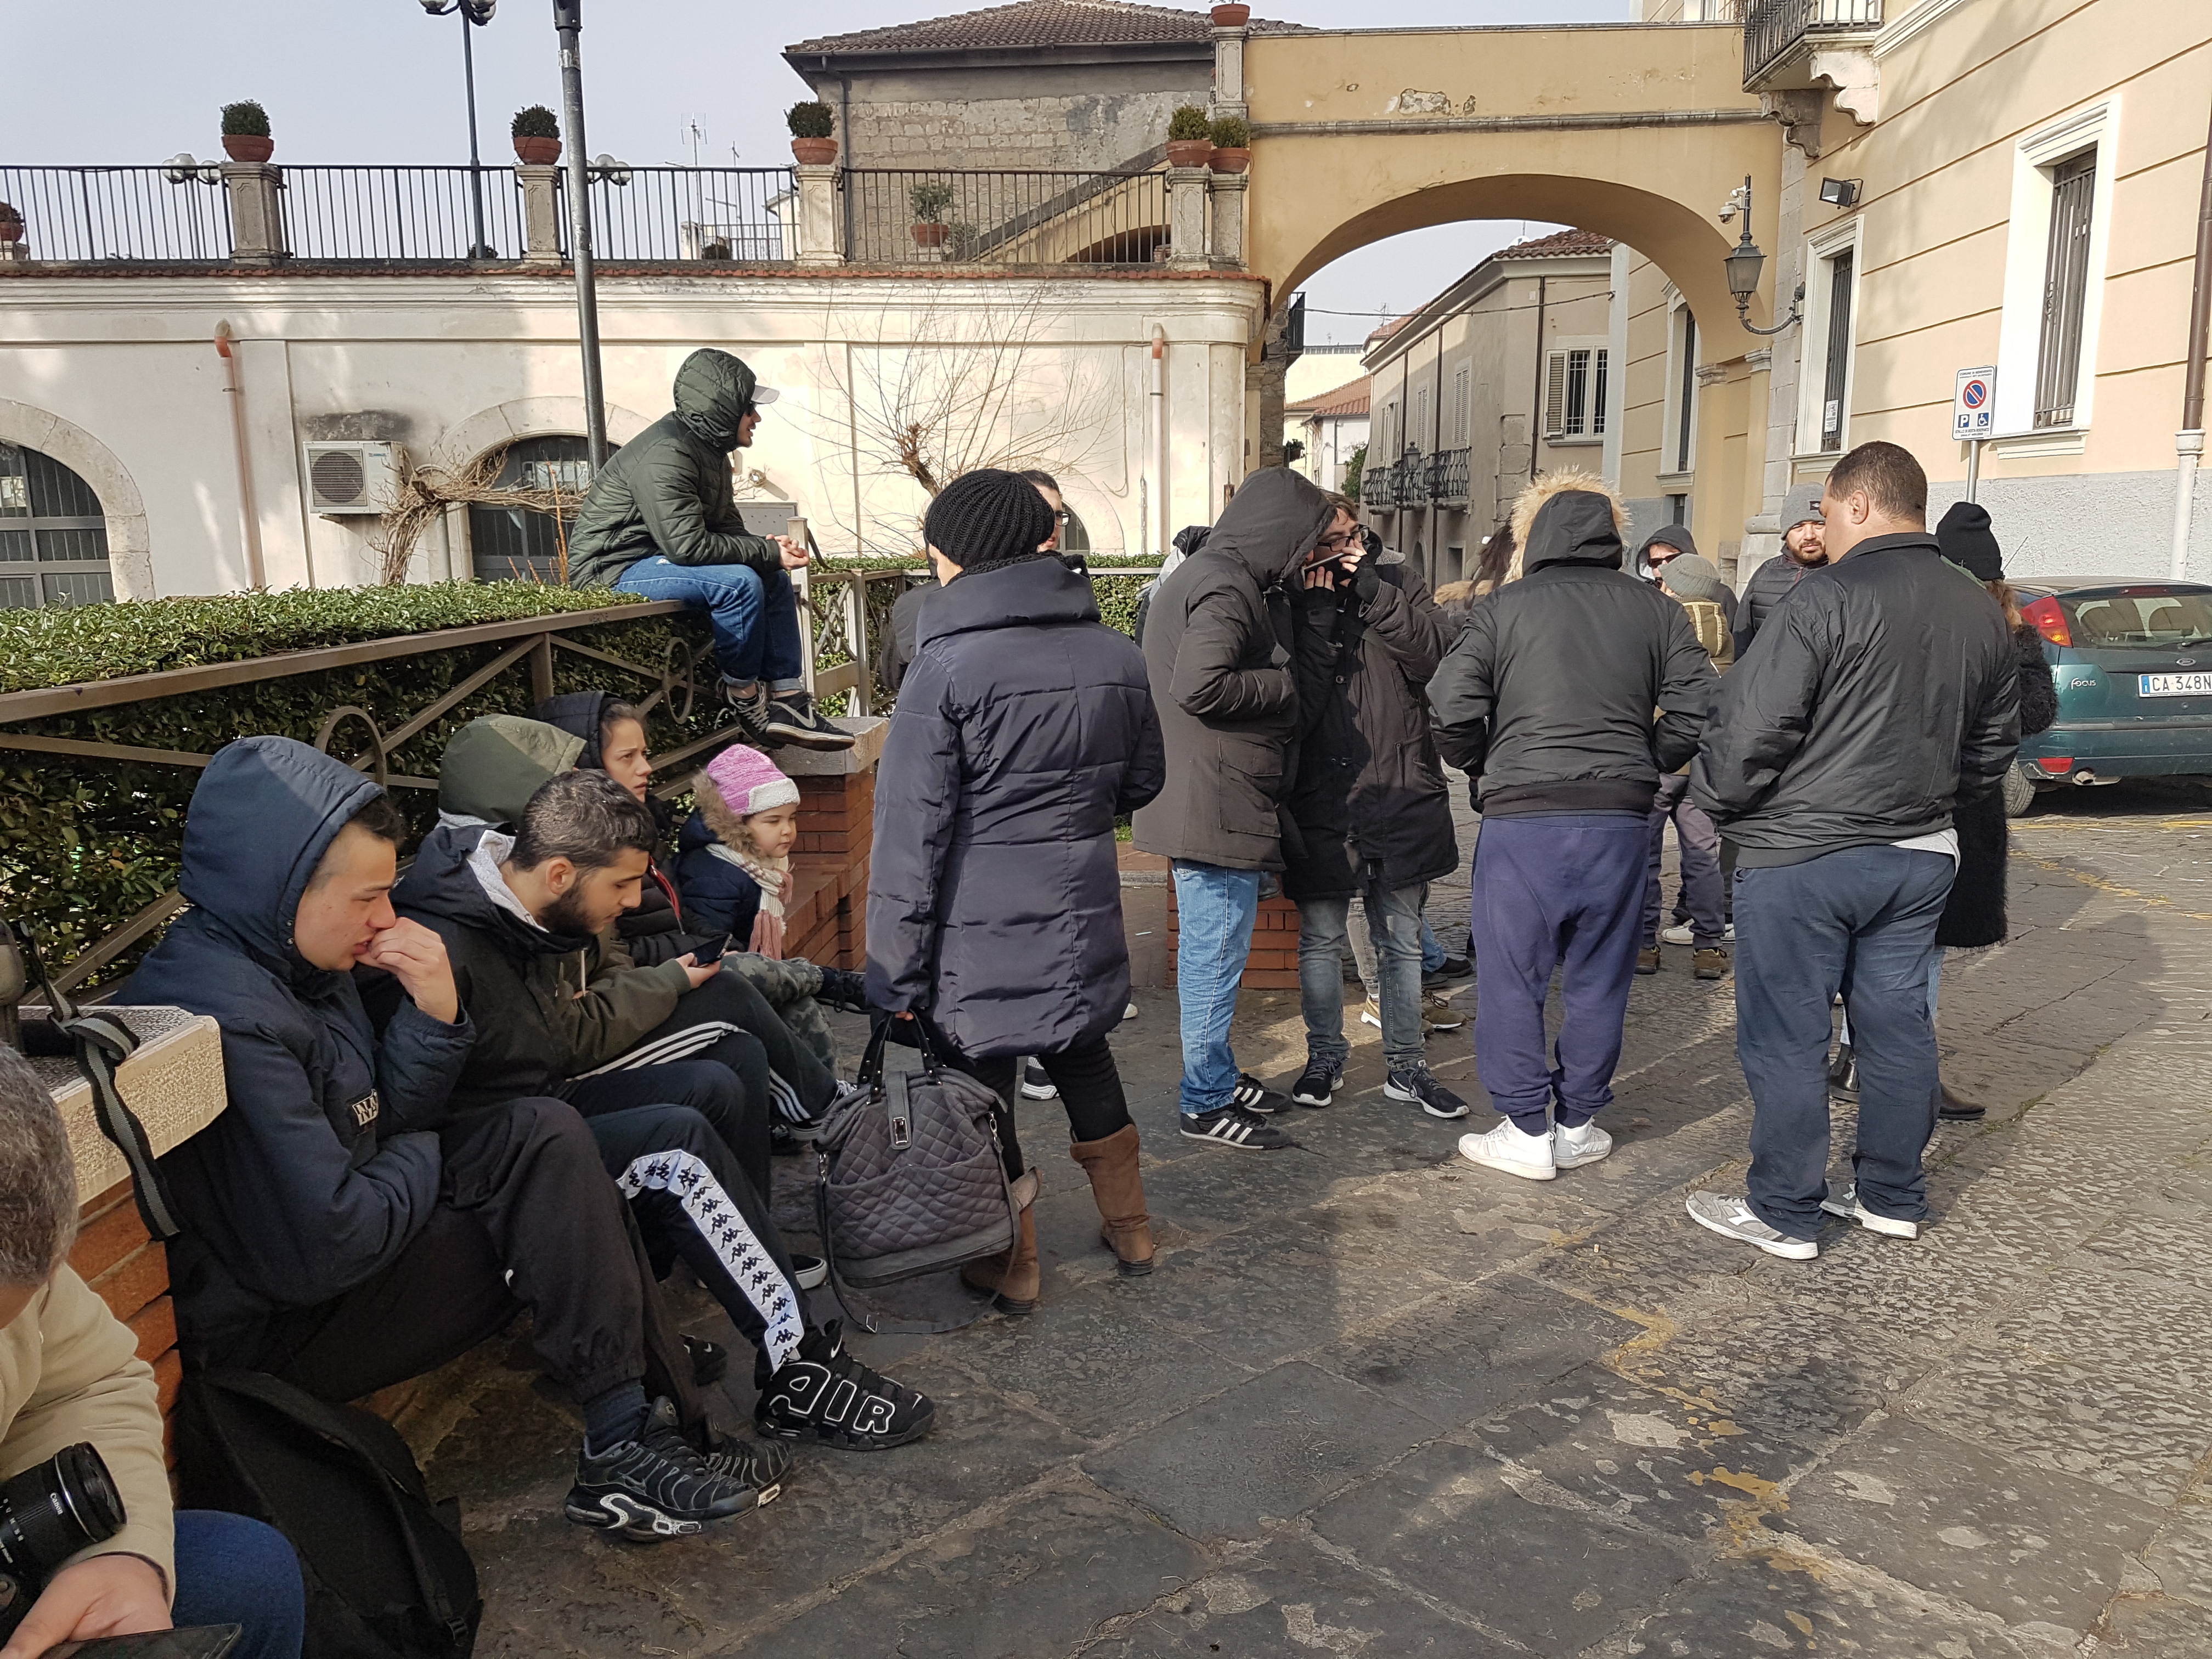 Benevento| Lap asilo,dopo il tentativo di sgombero, incontro in Comune. Aperta fase interlucutoria